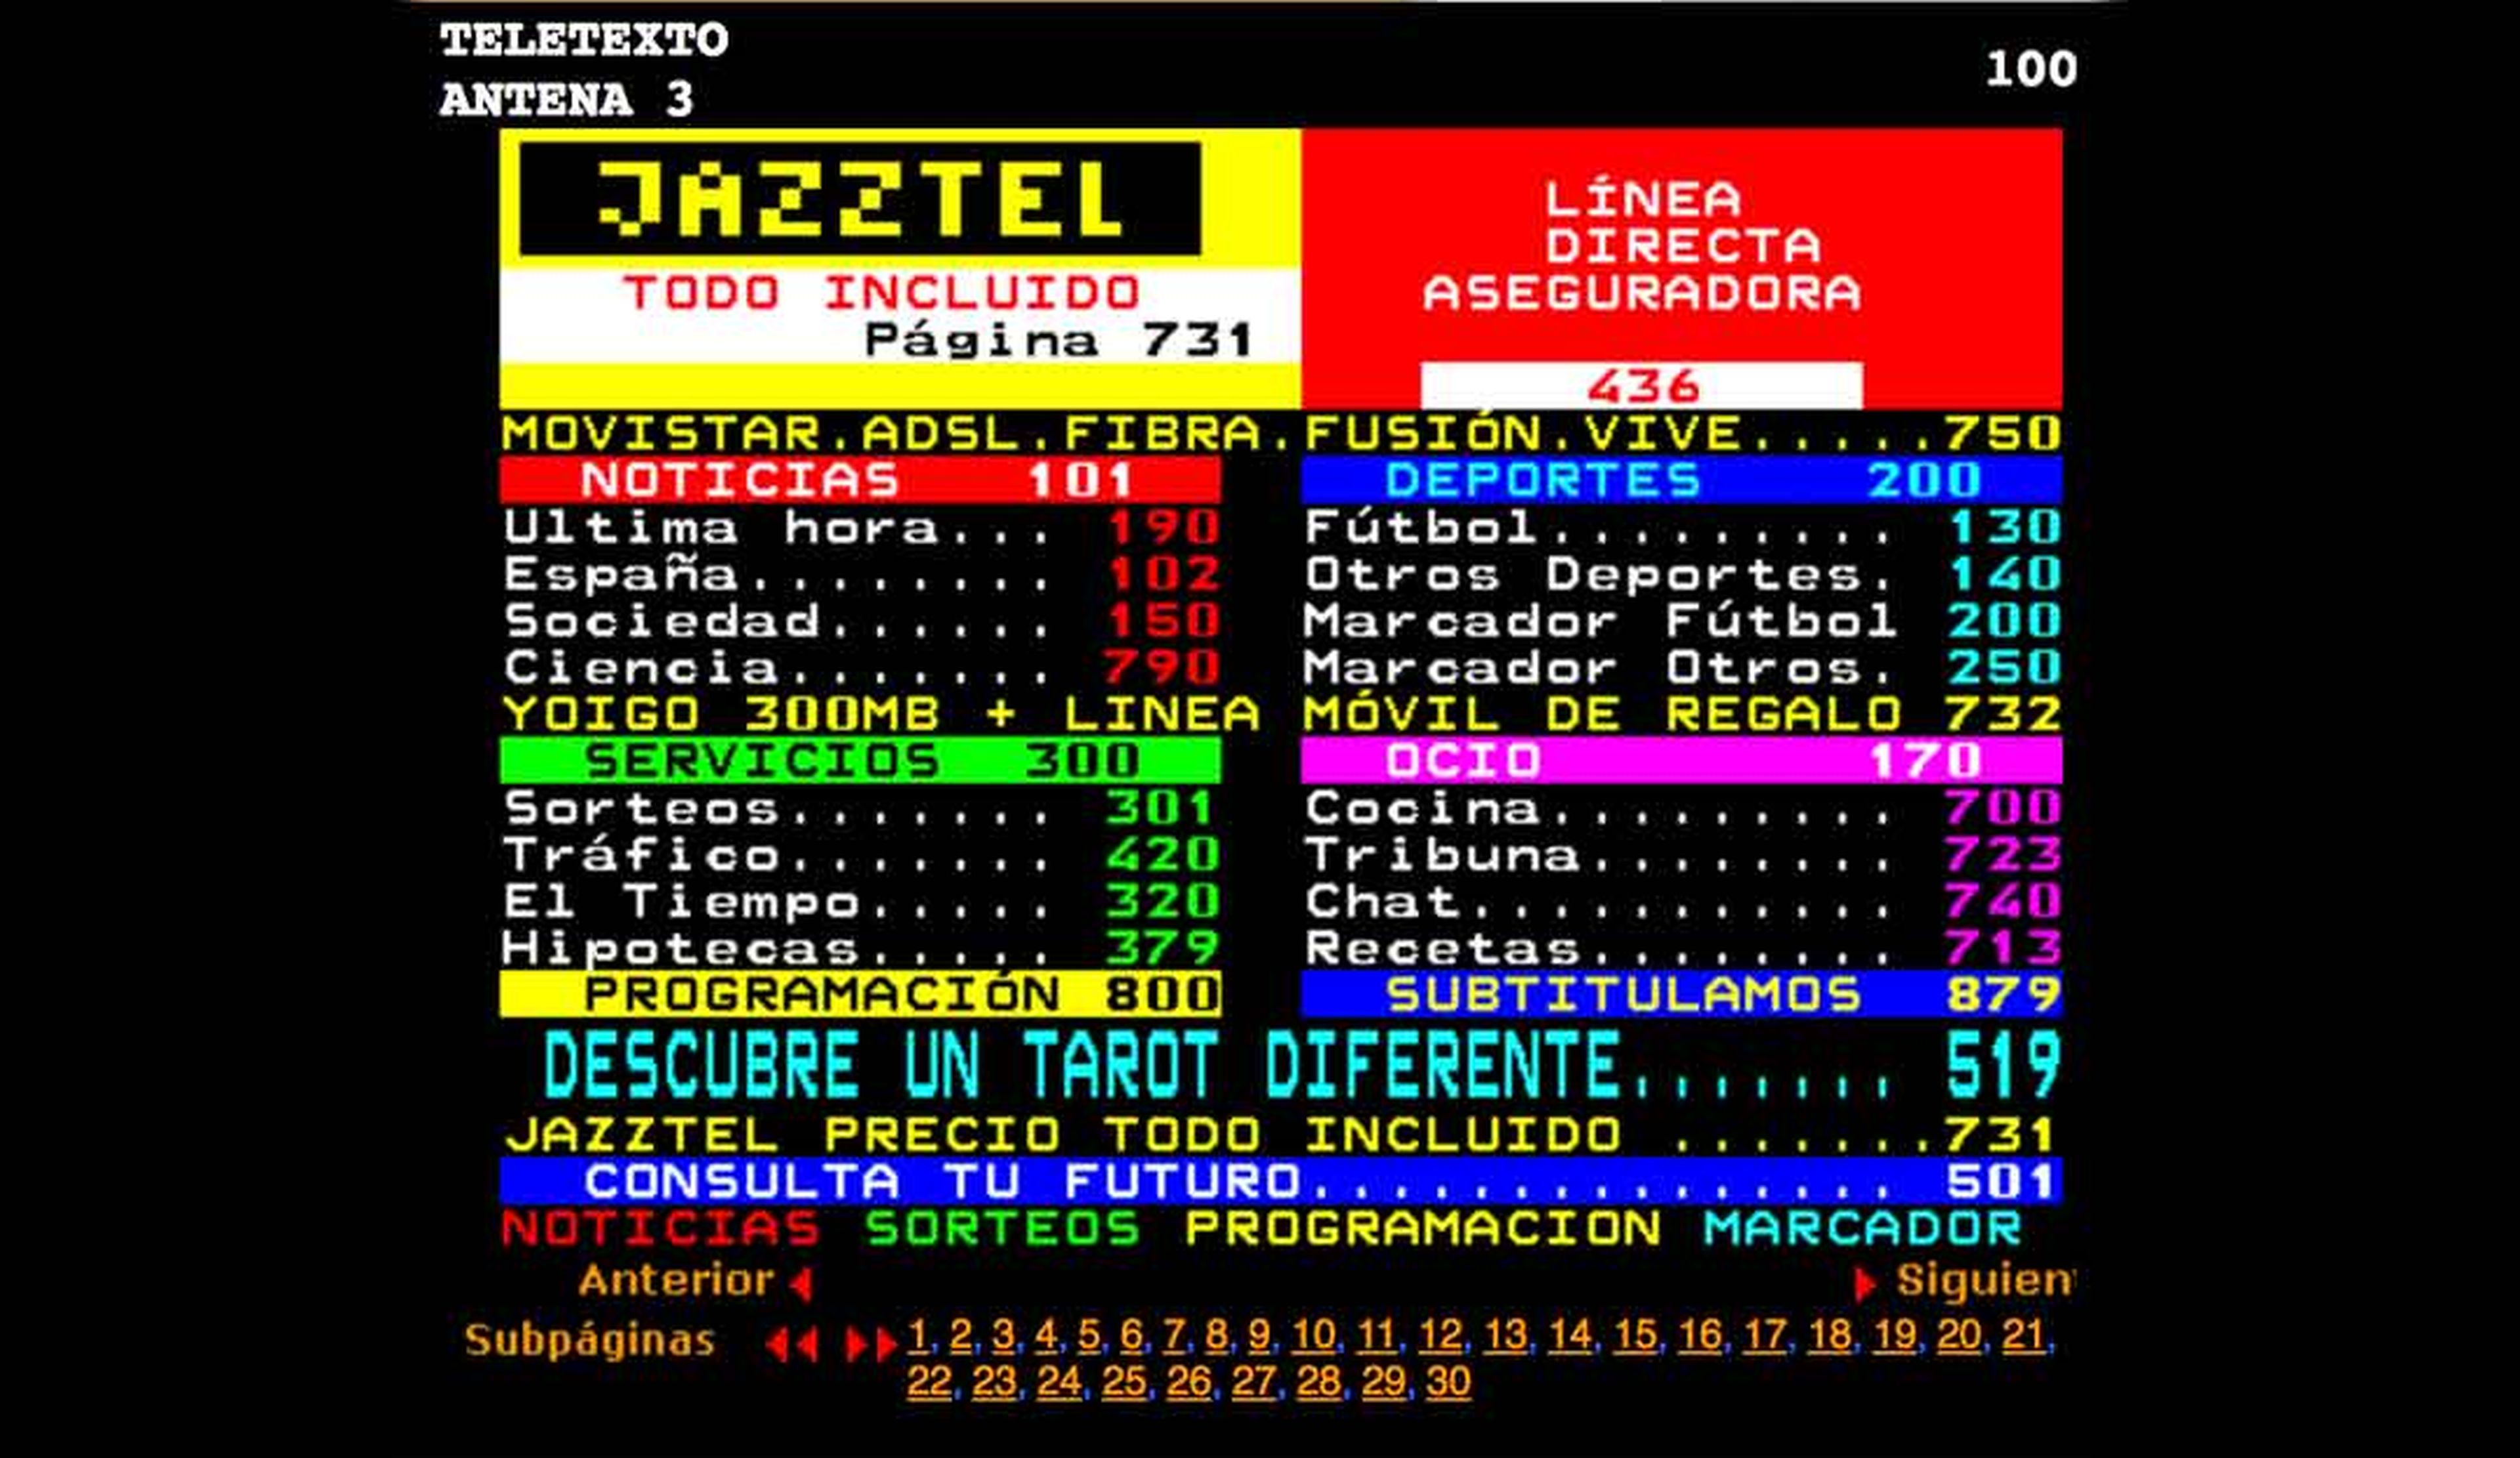 Teletexto Antena 3